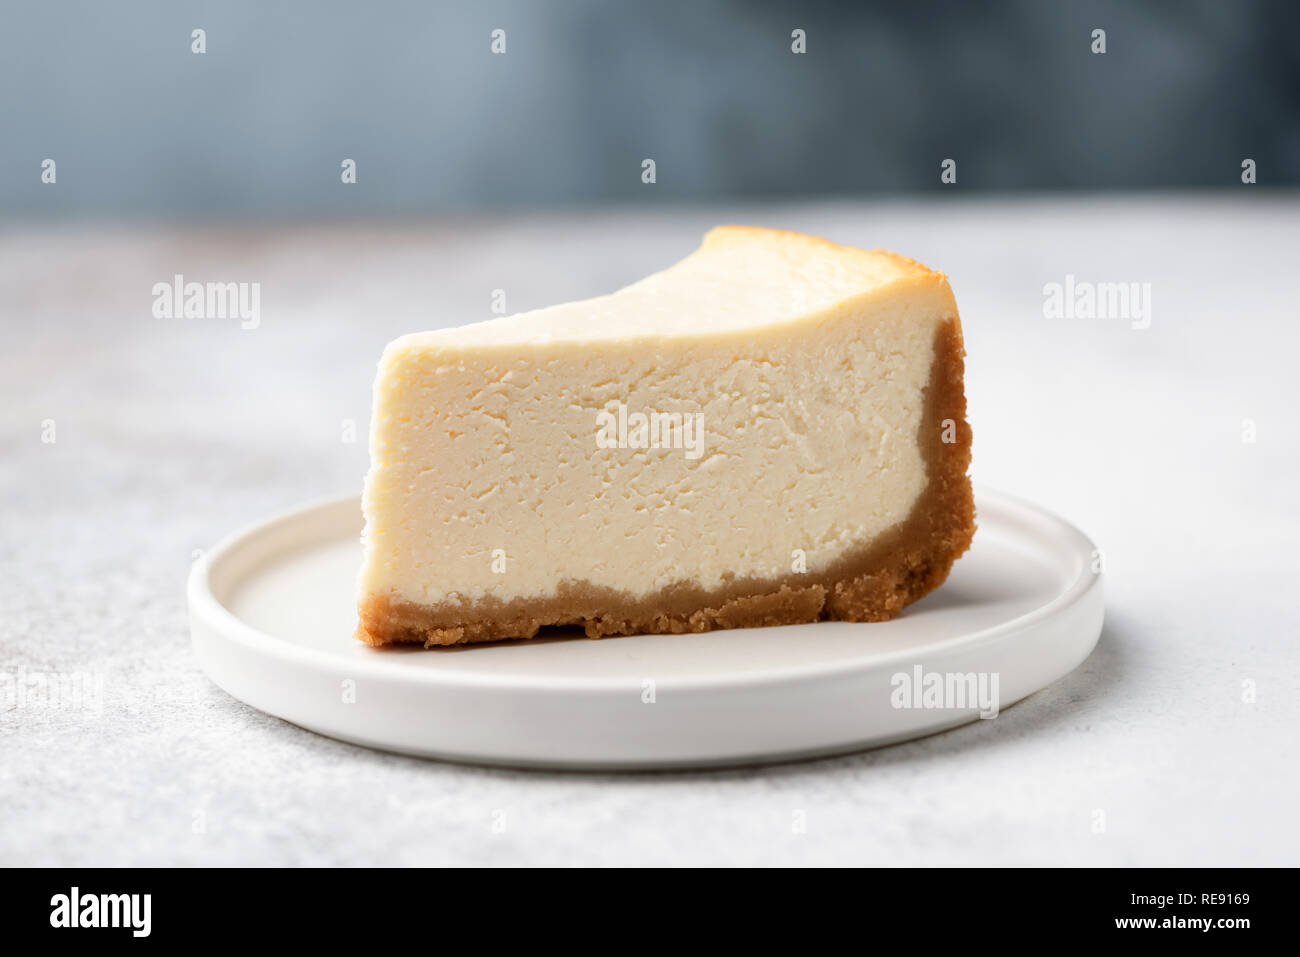 Rebanada de pastel de queso de Nueva York clásica en la placa blanca. Acercamiento Foto de stock